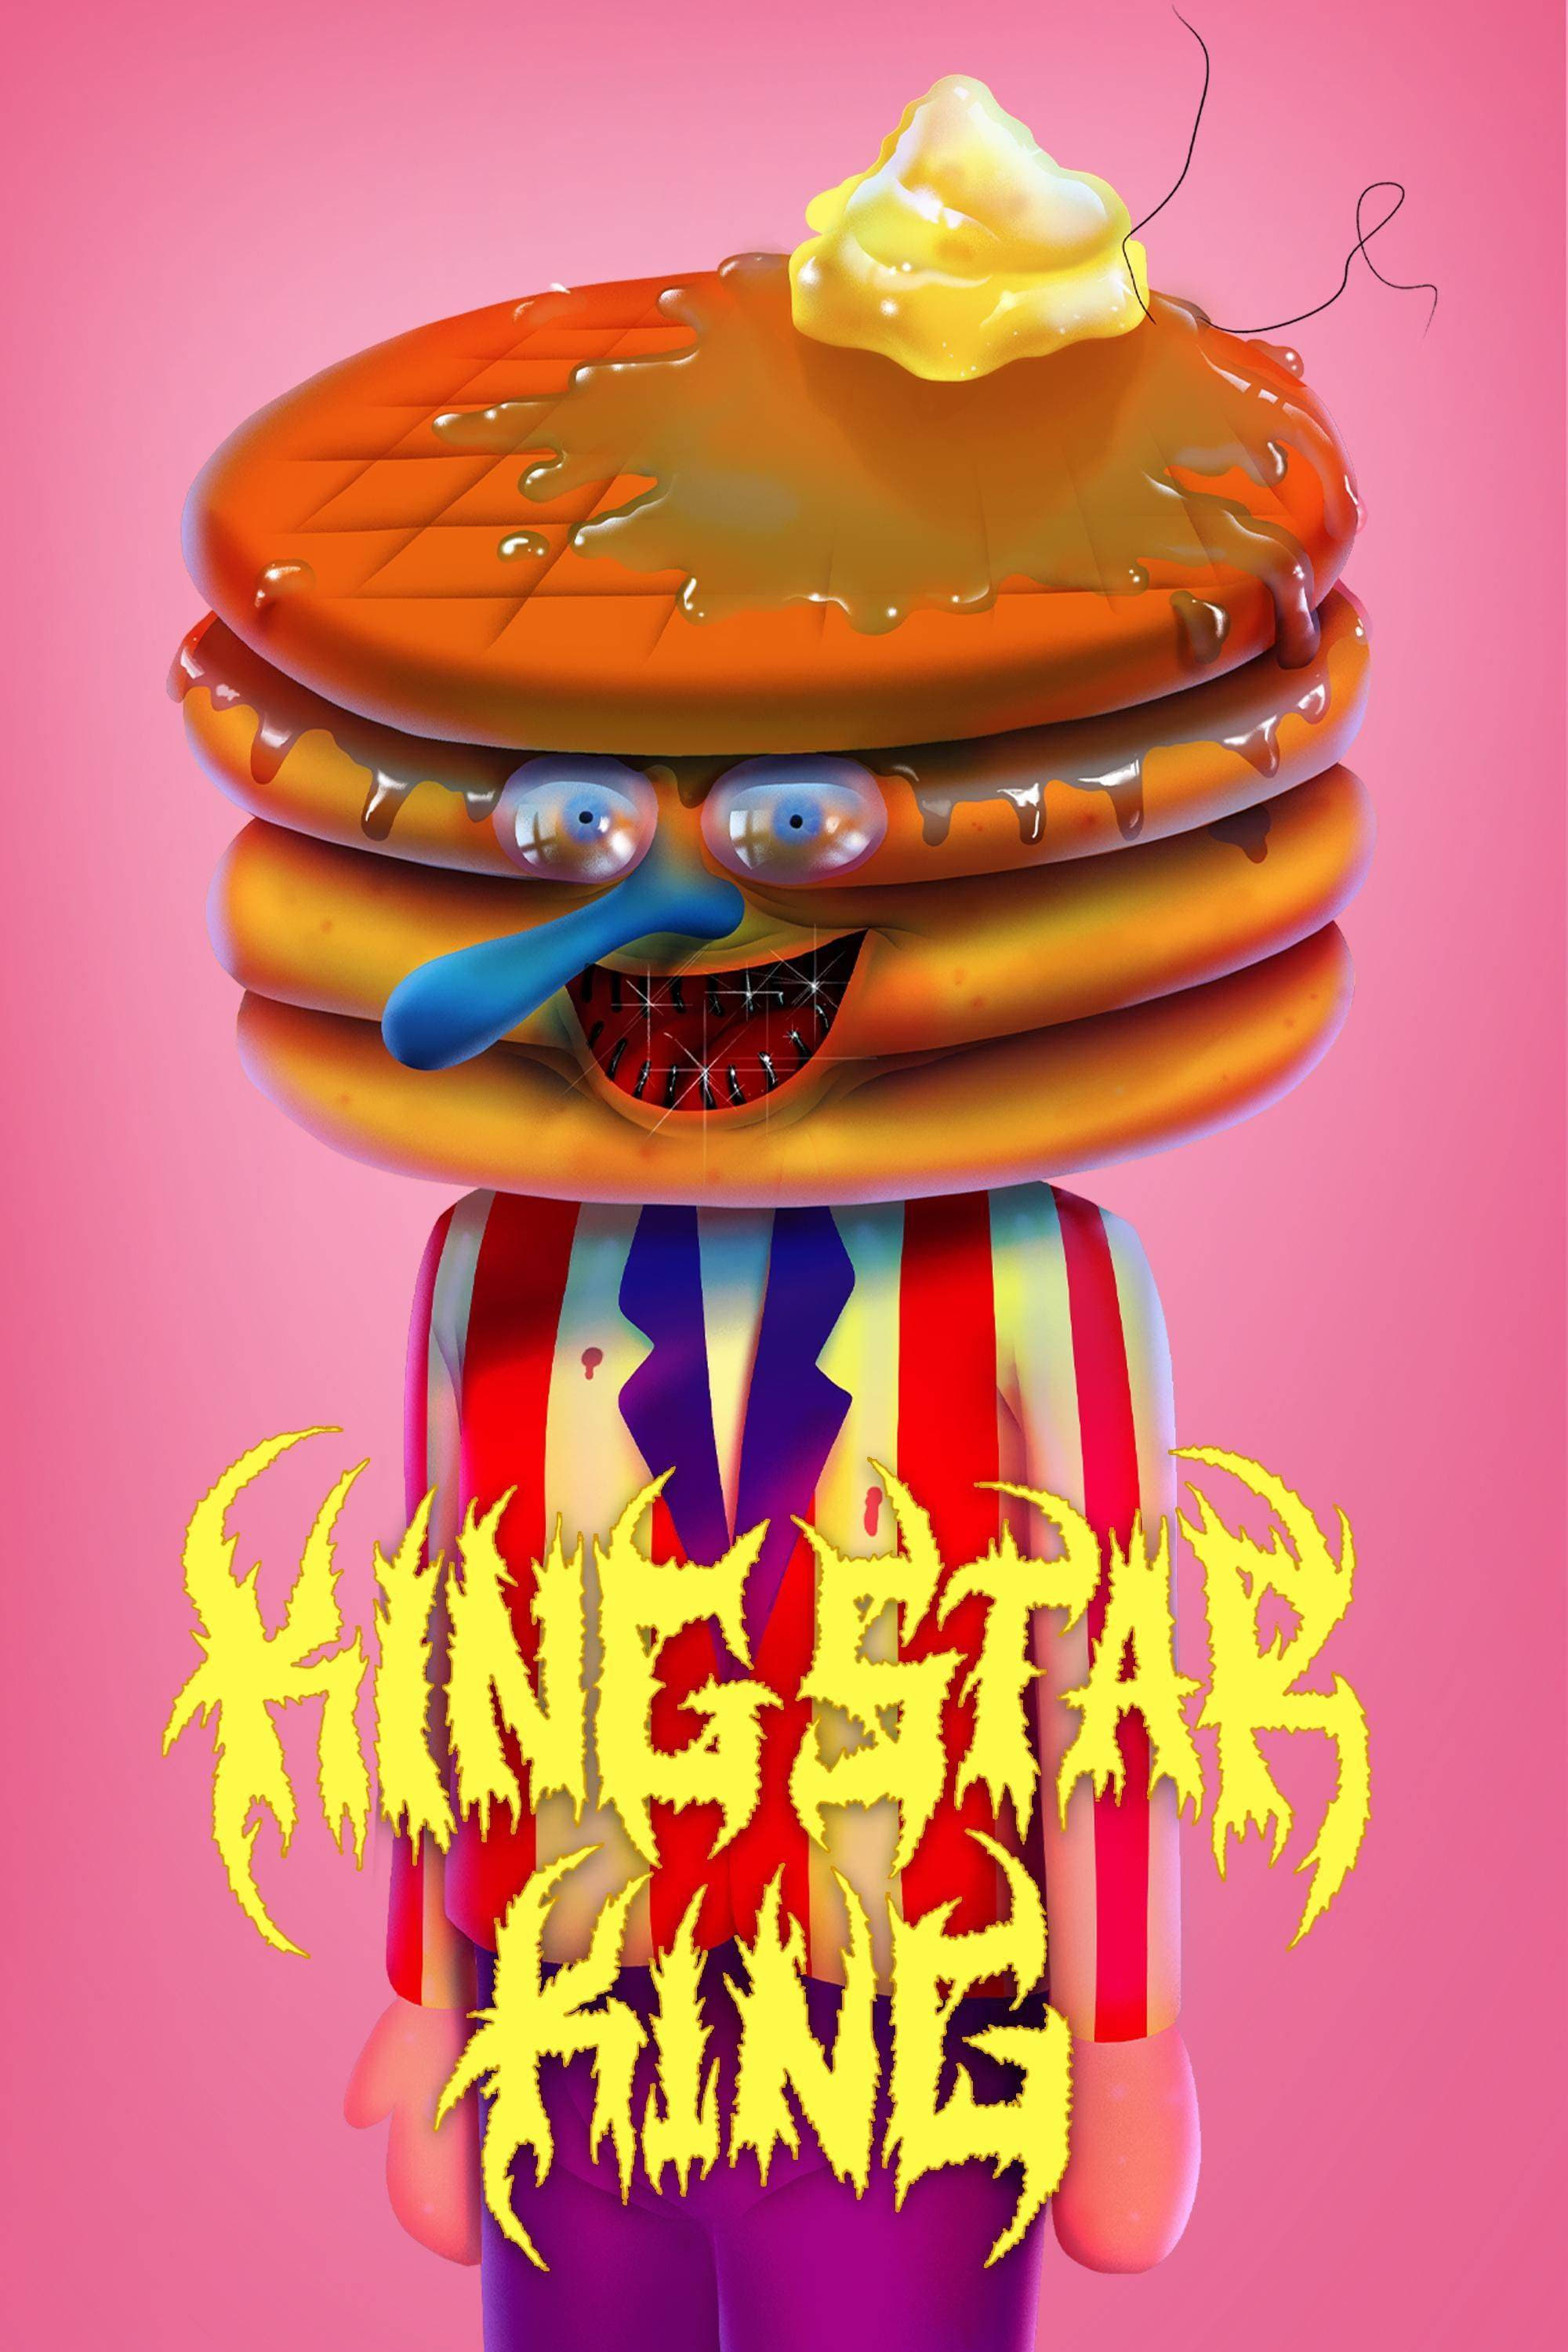 King Star King (2014)